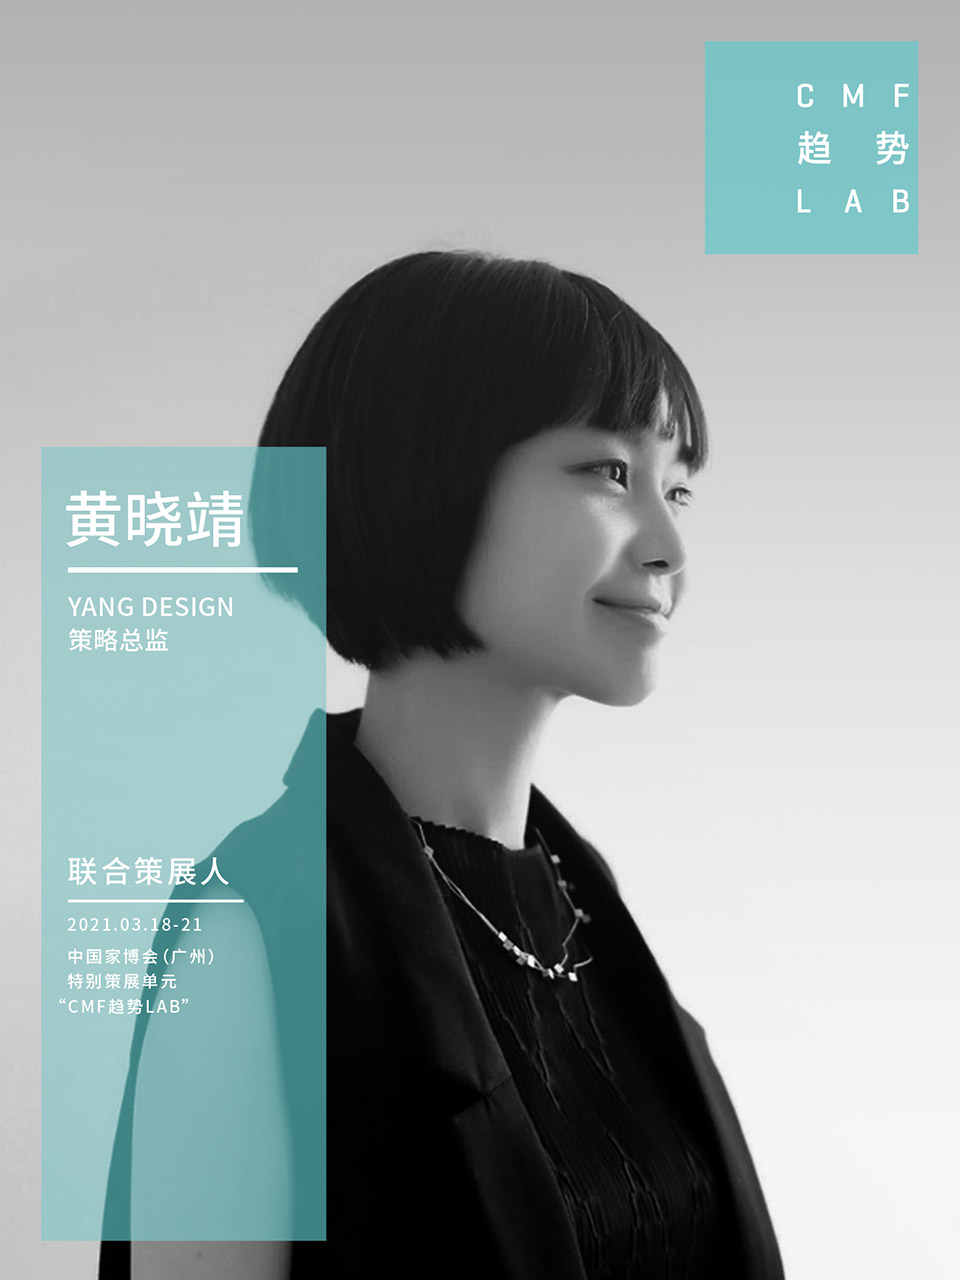 中国家博会“CMF趋势LAB” 四大主题实验室全新发布/“虚拟重构实验室”、“融手艺材料实验室”、“精致懒实验室”、“无废实验室”
-85